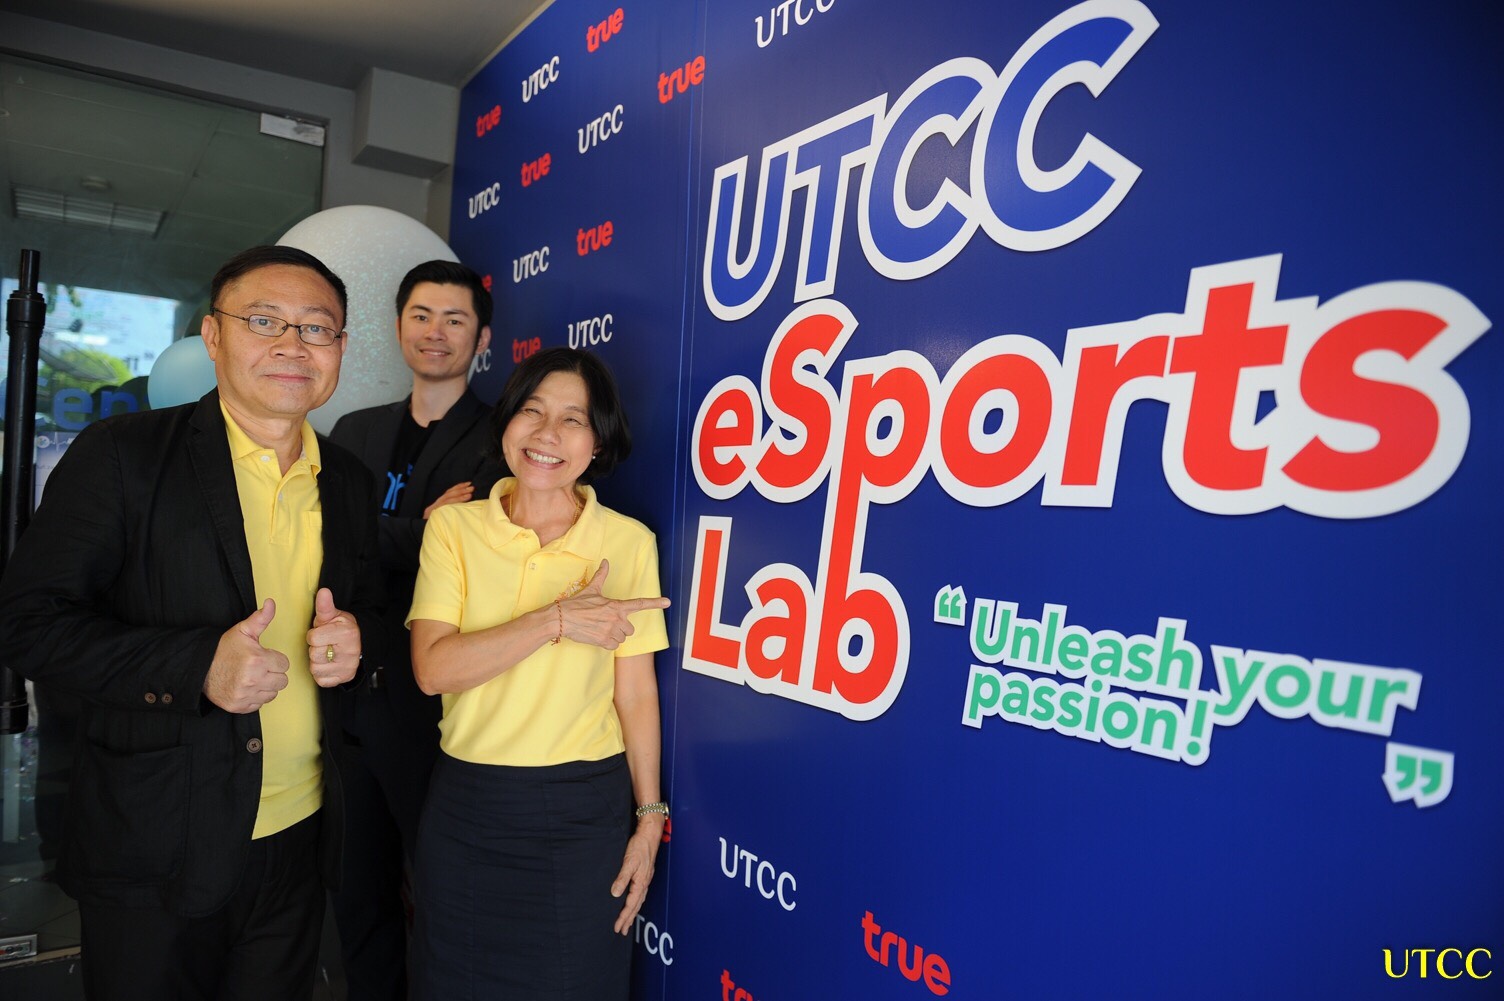 ม.หอการค้าไทย จับมือ ทรู คอร์ปอเรชั่น เปิดตัวห้องแลปอีสปอร์ตครั้งแรกในไทย หวังสร้างนักธุรกิจเกมชิงส่วนแบ่งตลาดโลก